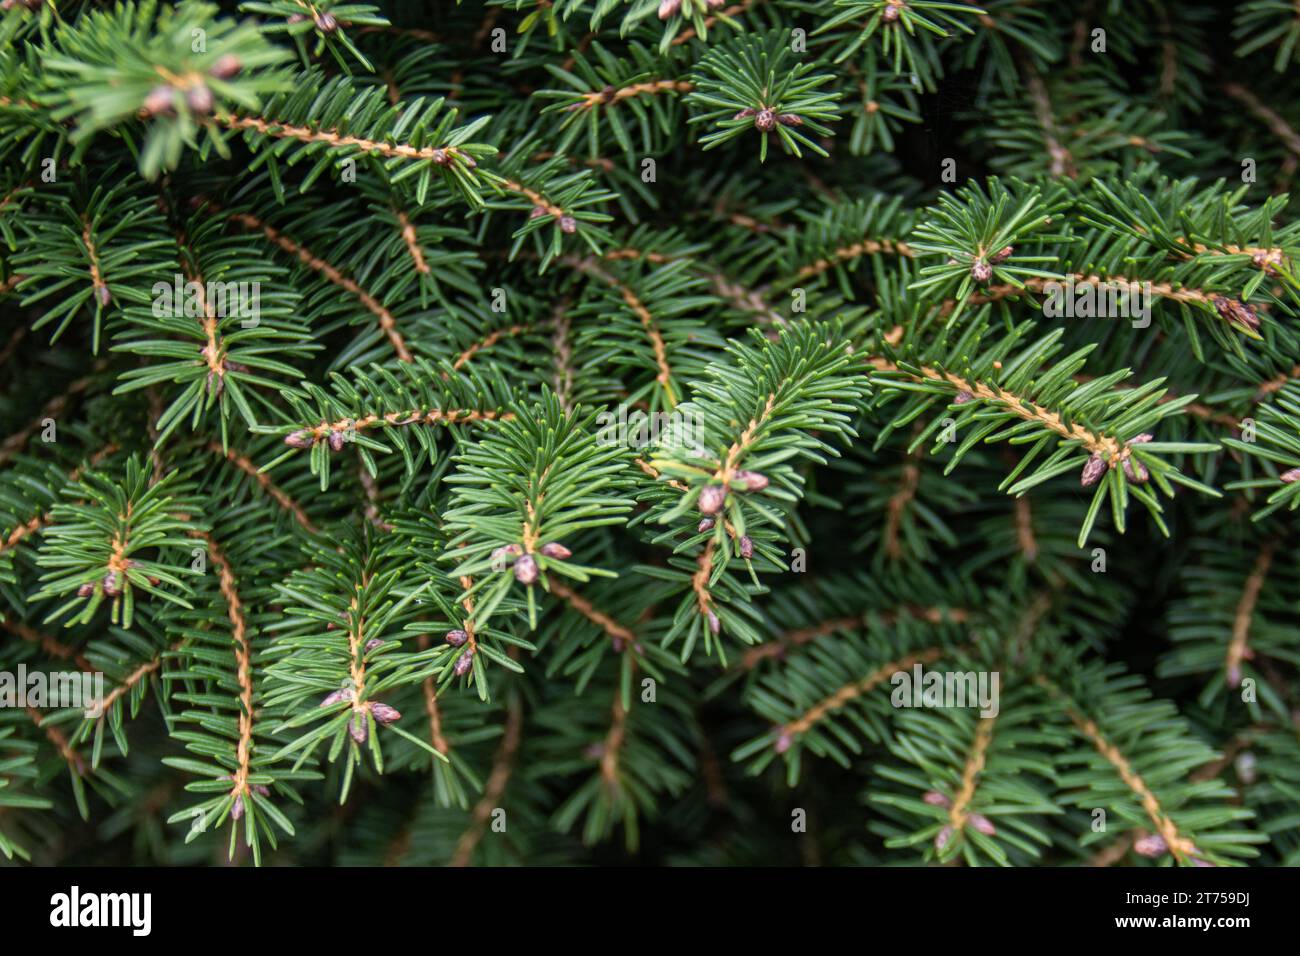 la bellezza serena dei rami lussureggianti e stretti di un pino, un tributo alla resilienza della natura Foto Stock